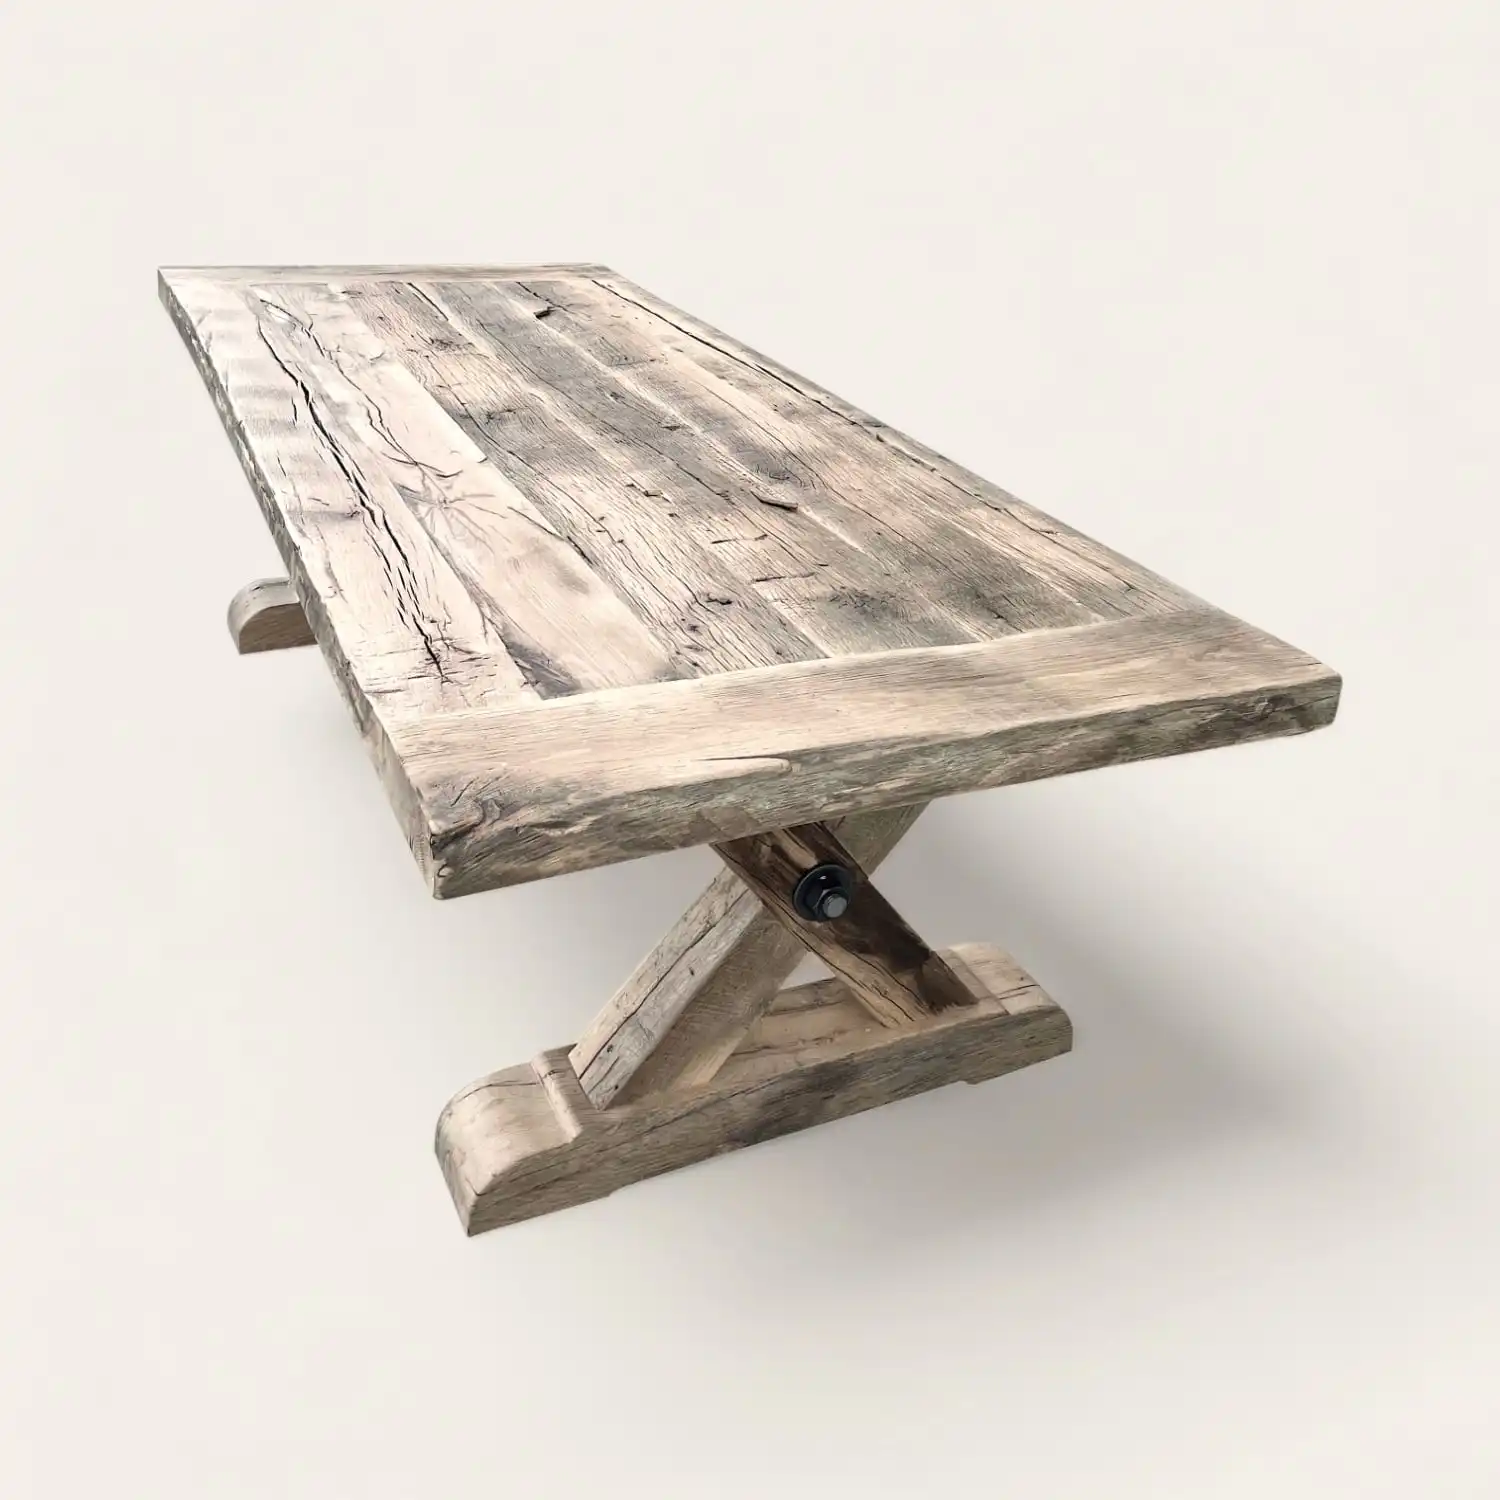  Une table de ferme rustique avec un plateau de bois ancien aux veines et textures marquées, soutenu par des pieds en X robustes, offrant un design élégant qui allie la simplicité rustique à une esthétique moderne. 